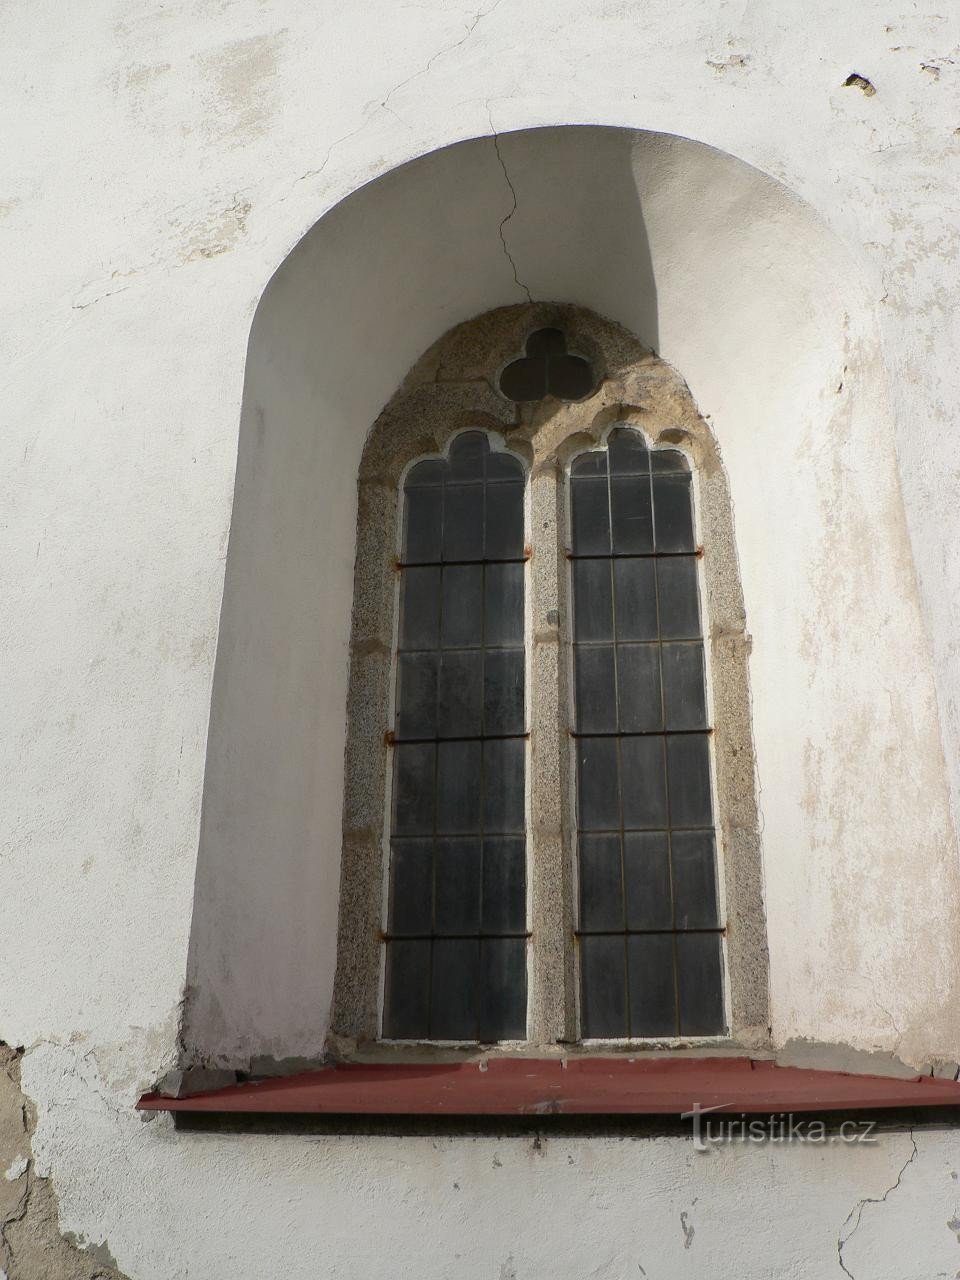 Cửa sổ kiểu Gothic của nhà thờ trước